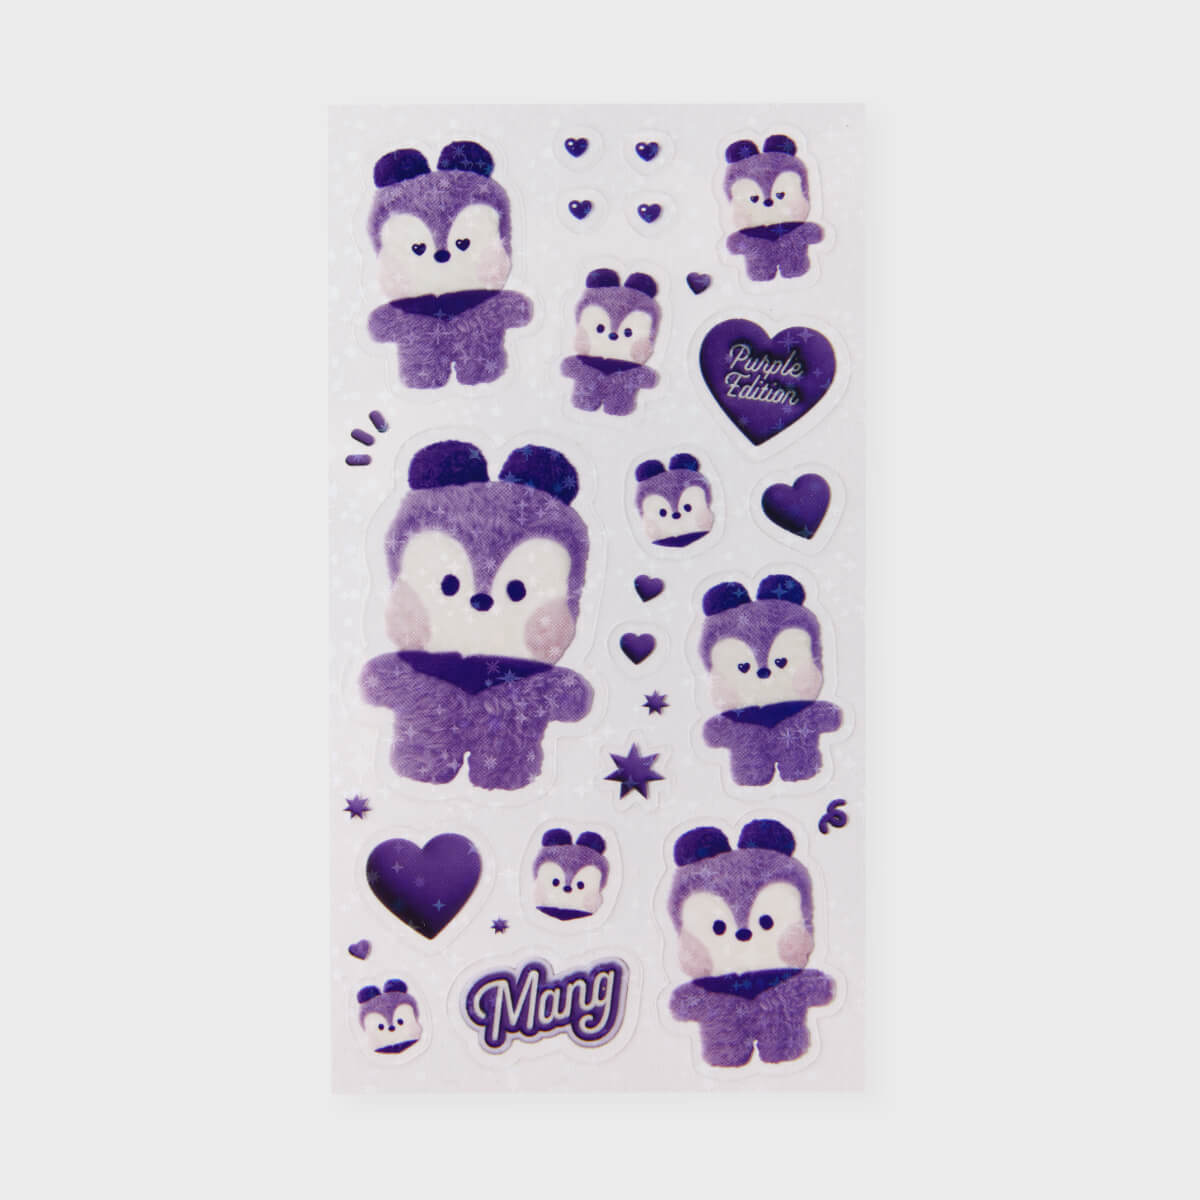 BT21 MANG minini Purple of Wish Stickers